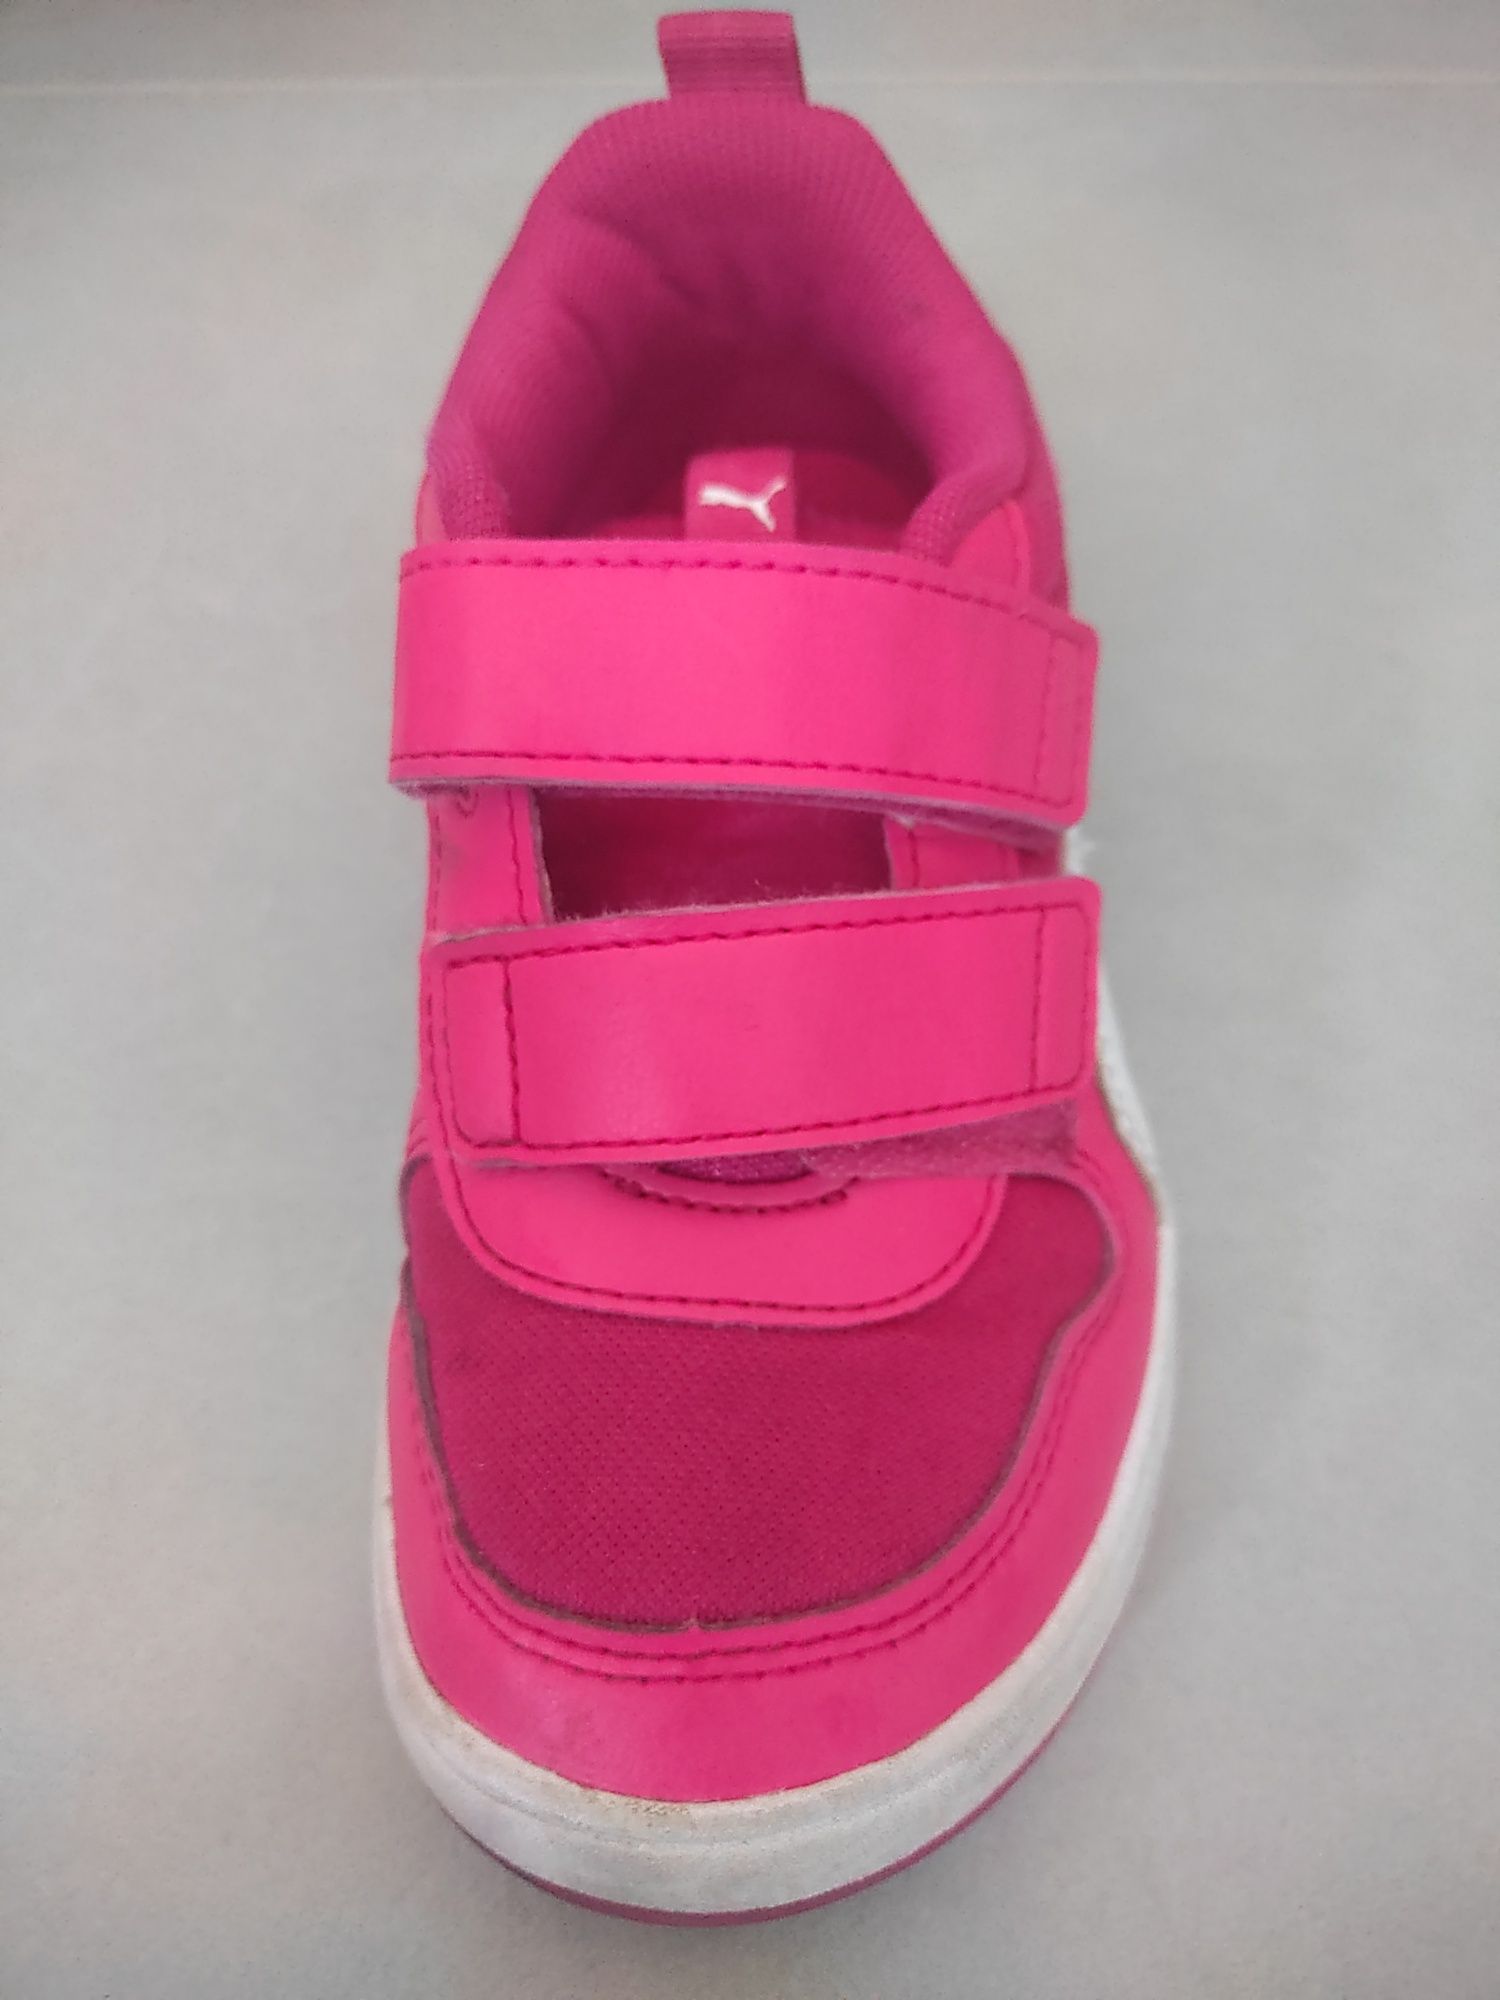 Buty dziecięce różowe Puma Muliflex rozmiar 29